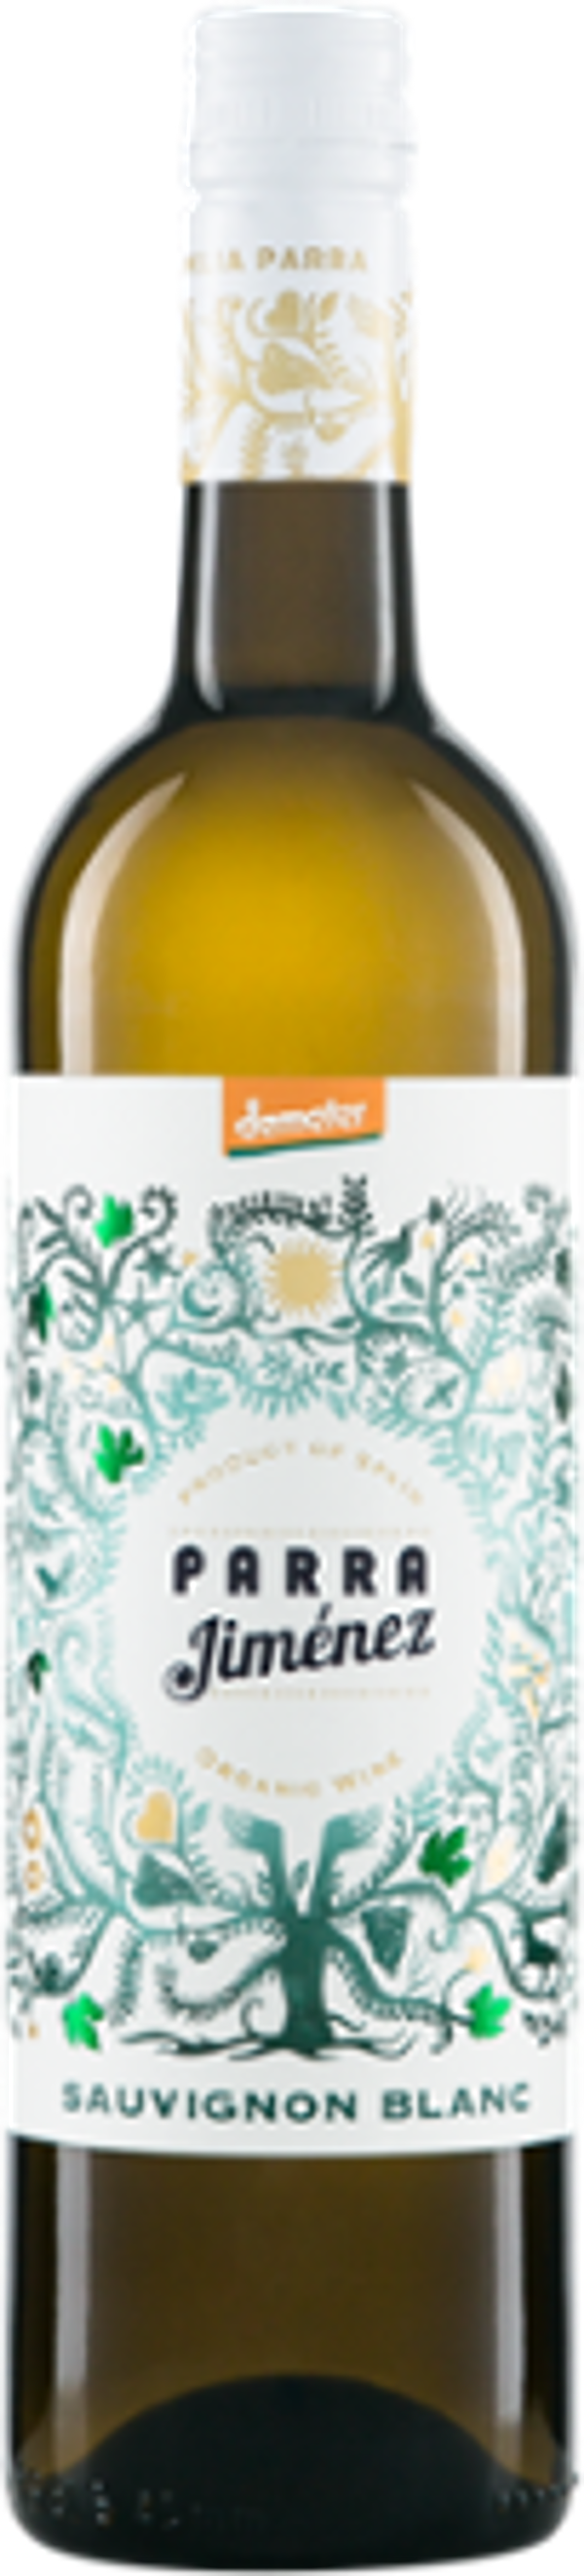 Produktfoto zu Kiste Sauvignon Blanc 'Parra' DO Demeter 6*0,75l